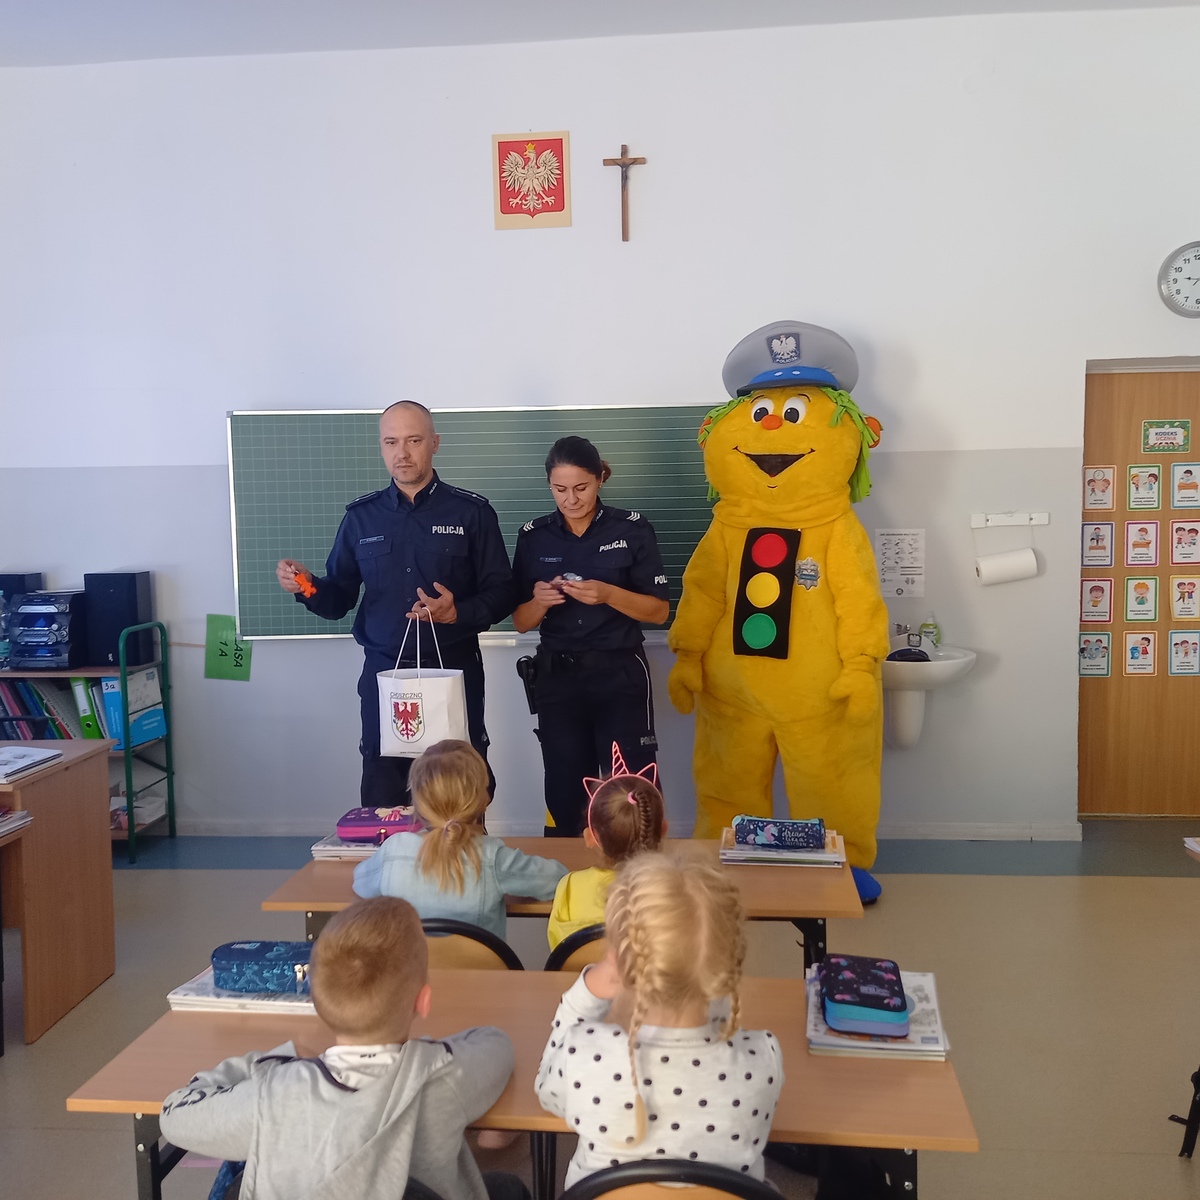 Policjant Stopek Z Wizytą W Szkole Aktualności Komenda Powiatowa Policji W Choszcznie 9574